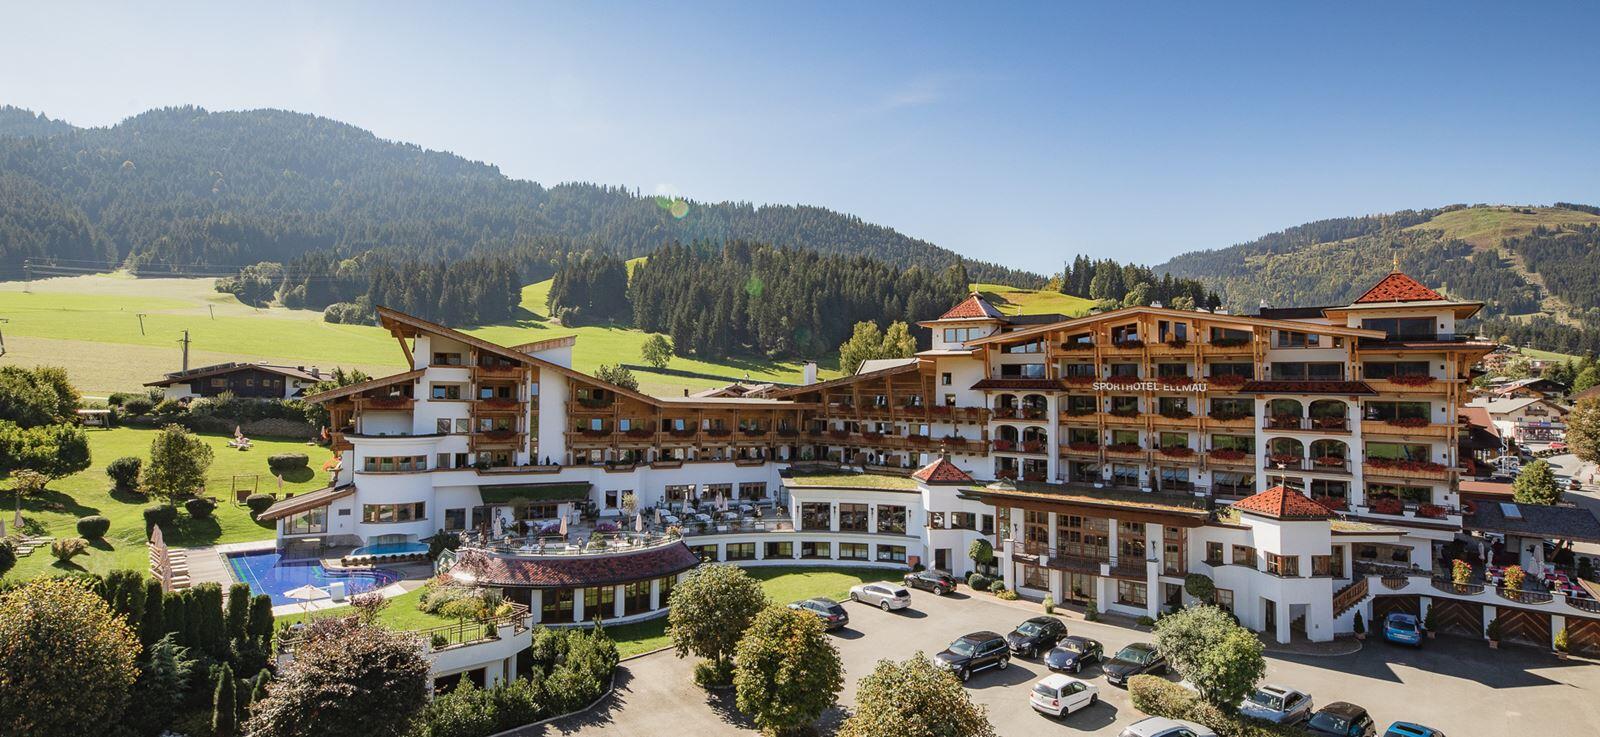 <h1>Sporthotel Ellmau Tirol</h1>